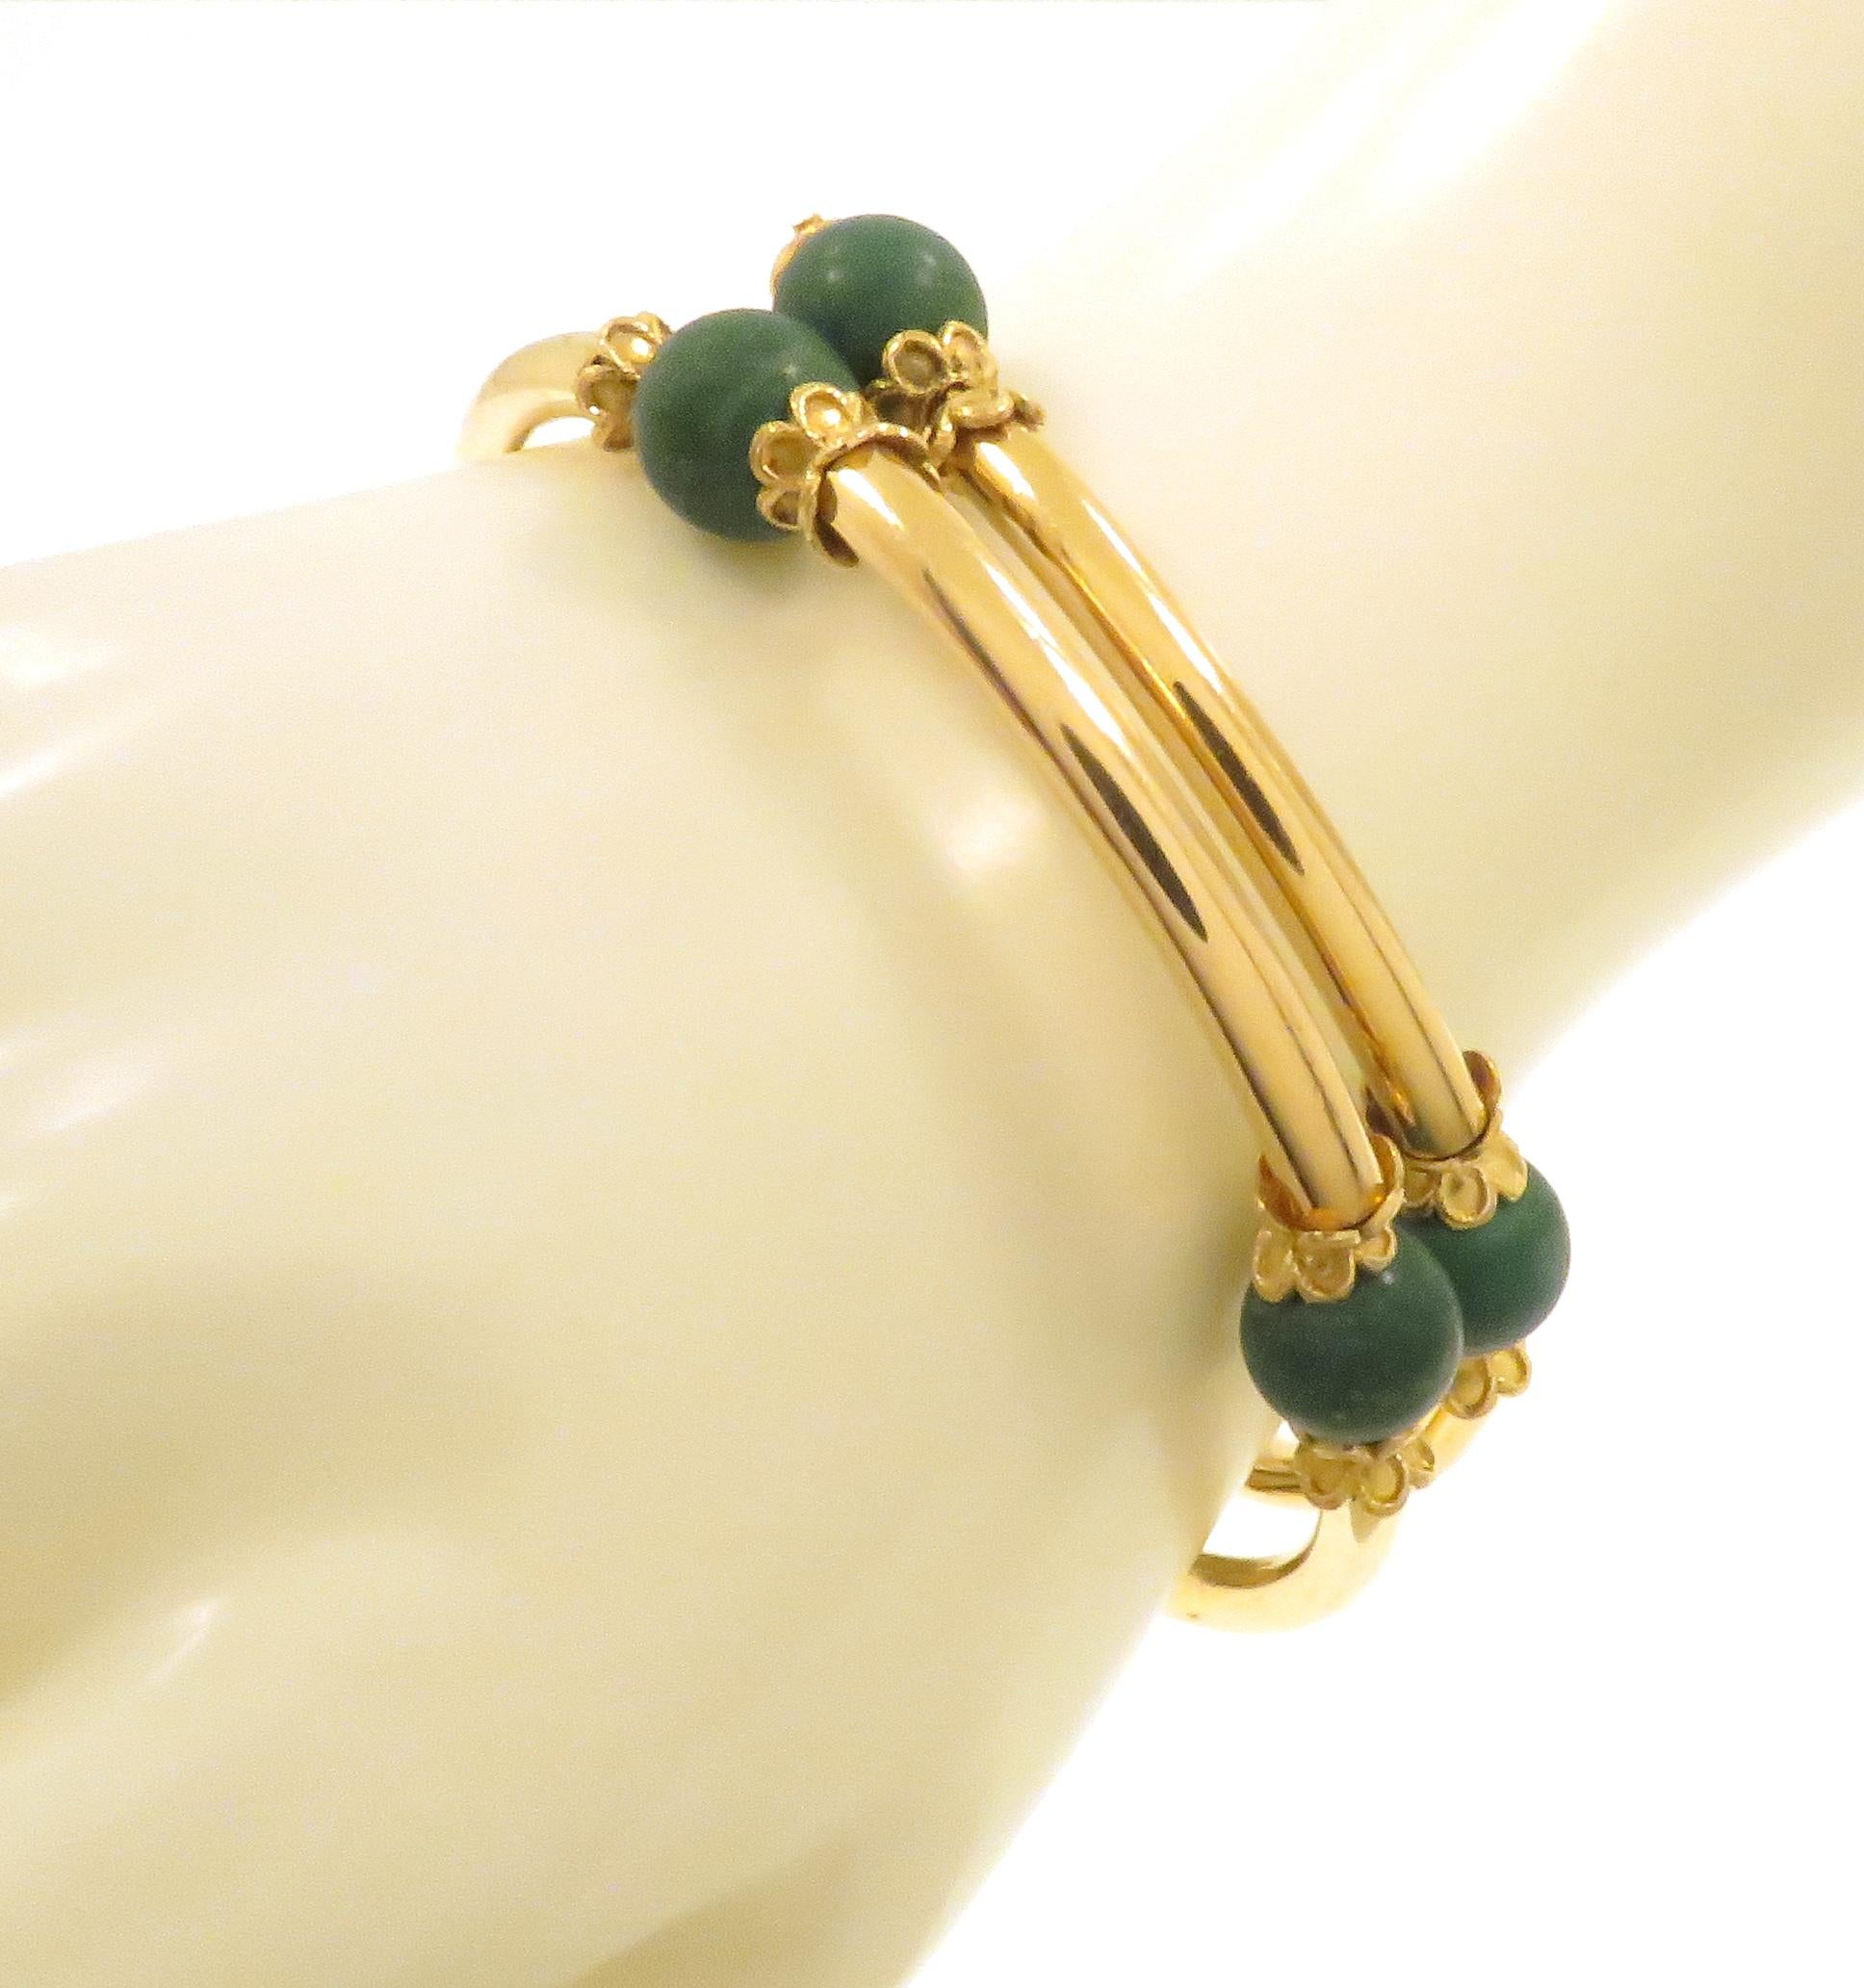 Vintage-Armband aus 18k Gelbgold mit 8 grünen Türkisperlen. Das Armband besteht aus einer Spirale aus goldenen Röhrenelementen, die durch türkisfarbene Perlen getrennt sind. Die Perlen sind mit blütenblattgespitzten Körbchen verziert. Ein